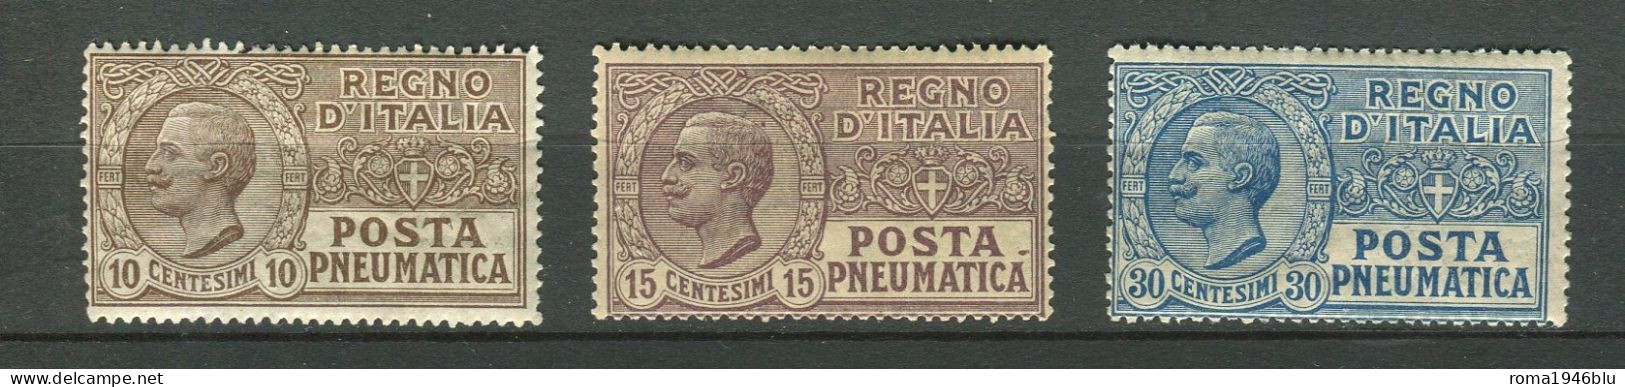 REGNO 1913-23 POSTA PNEUMATICA SERIE CPL.** MNH - Pneumatic Mail